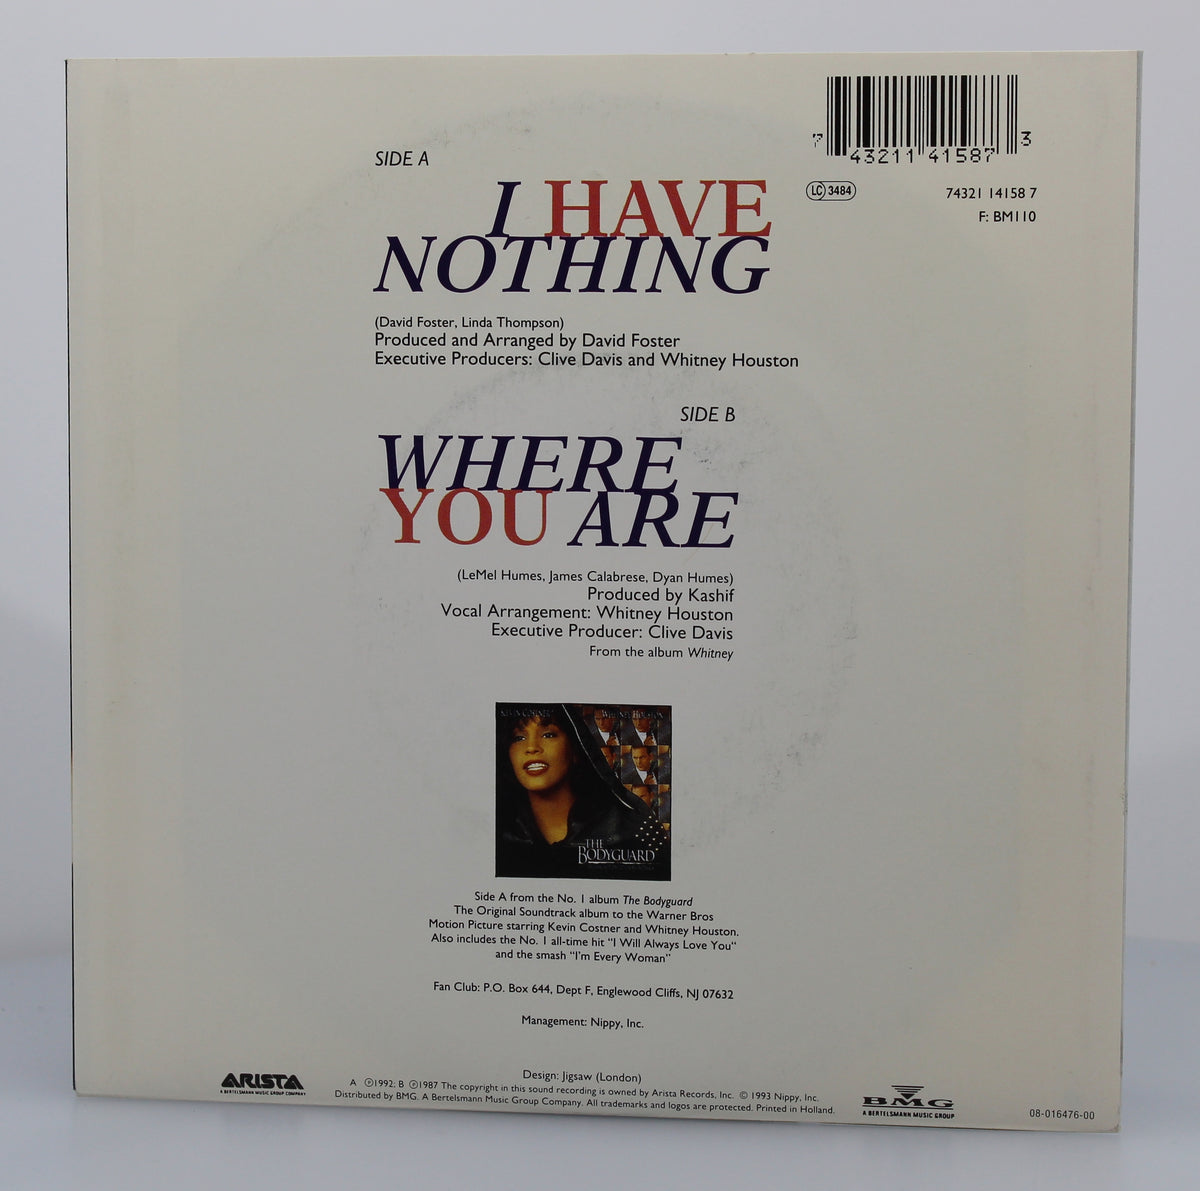 Whitney Houston ‎– I Have Nothing, Vinyl, 7&quot; Single 45rpm, Europe 1992